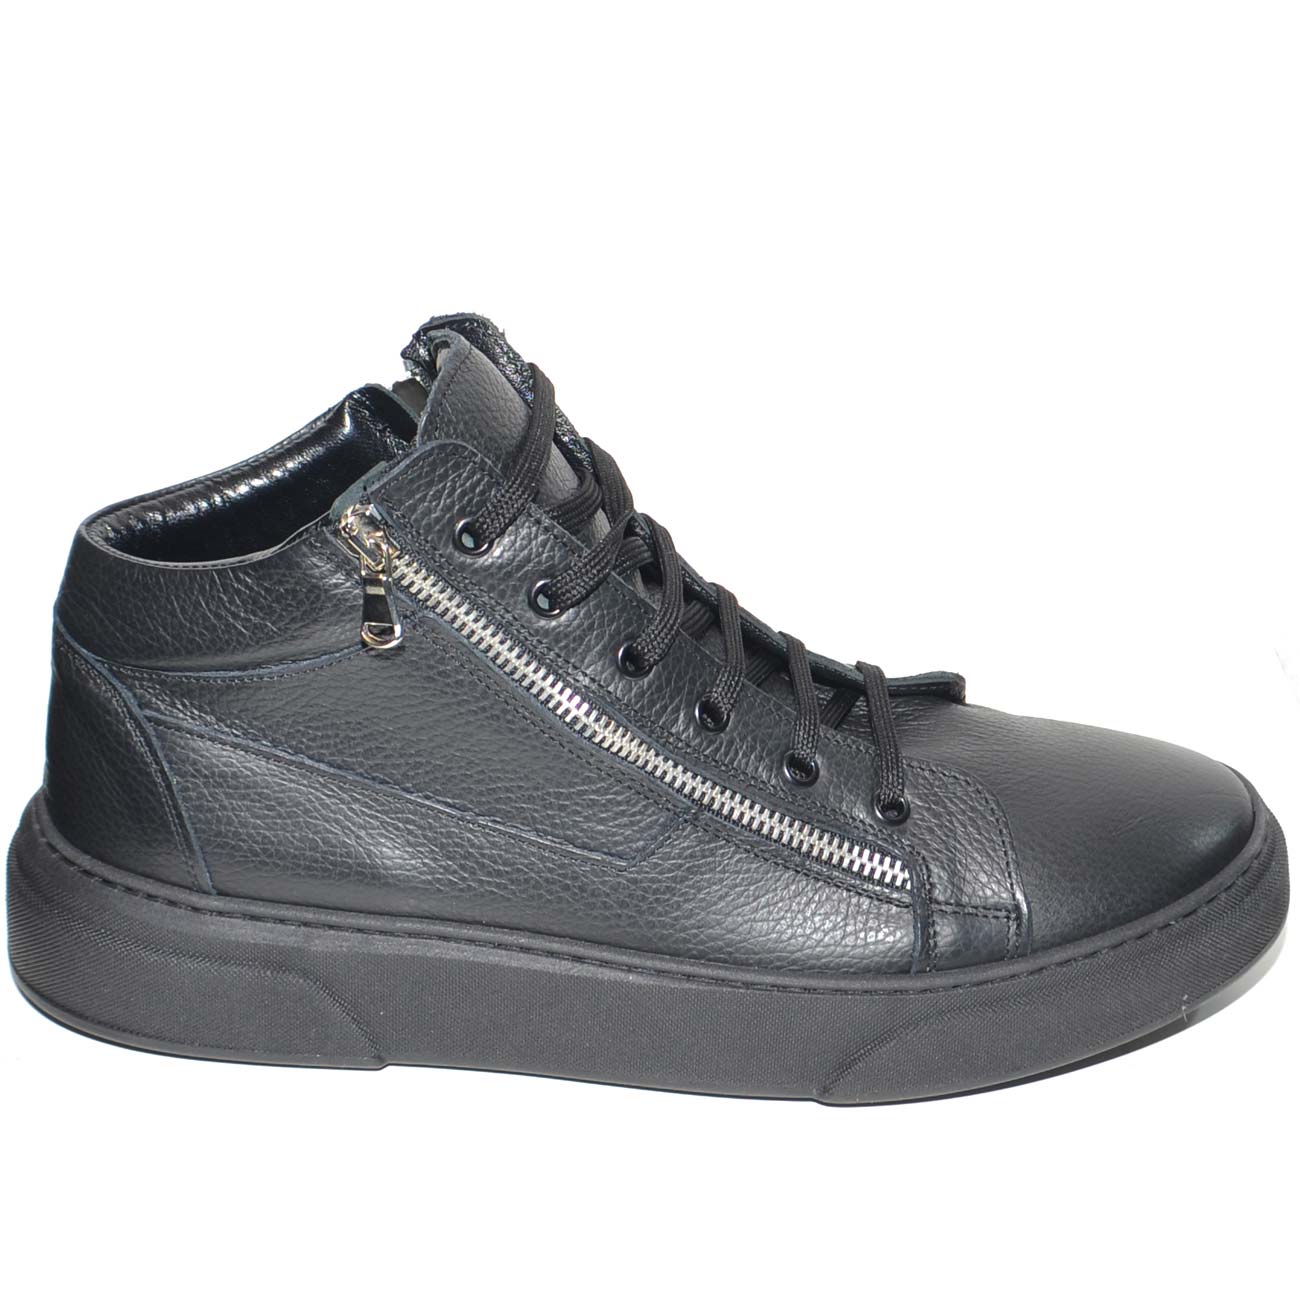 Sneakers bassa uomo in vera nero bortolato bianco con doppia zip argento lacci fondo fur nero modello za022 moda uomo